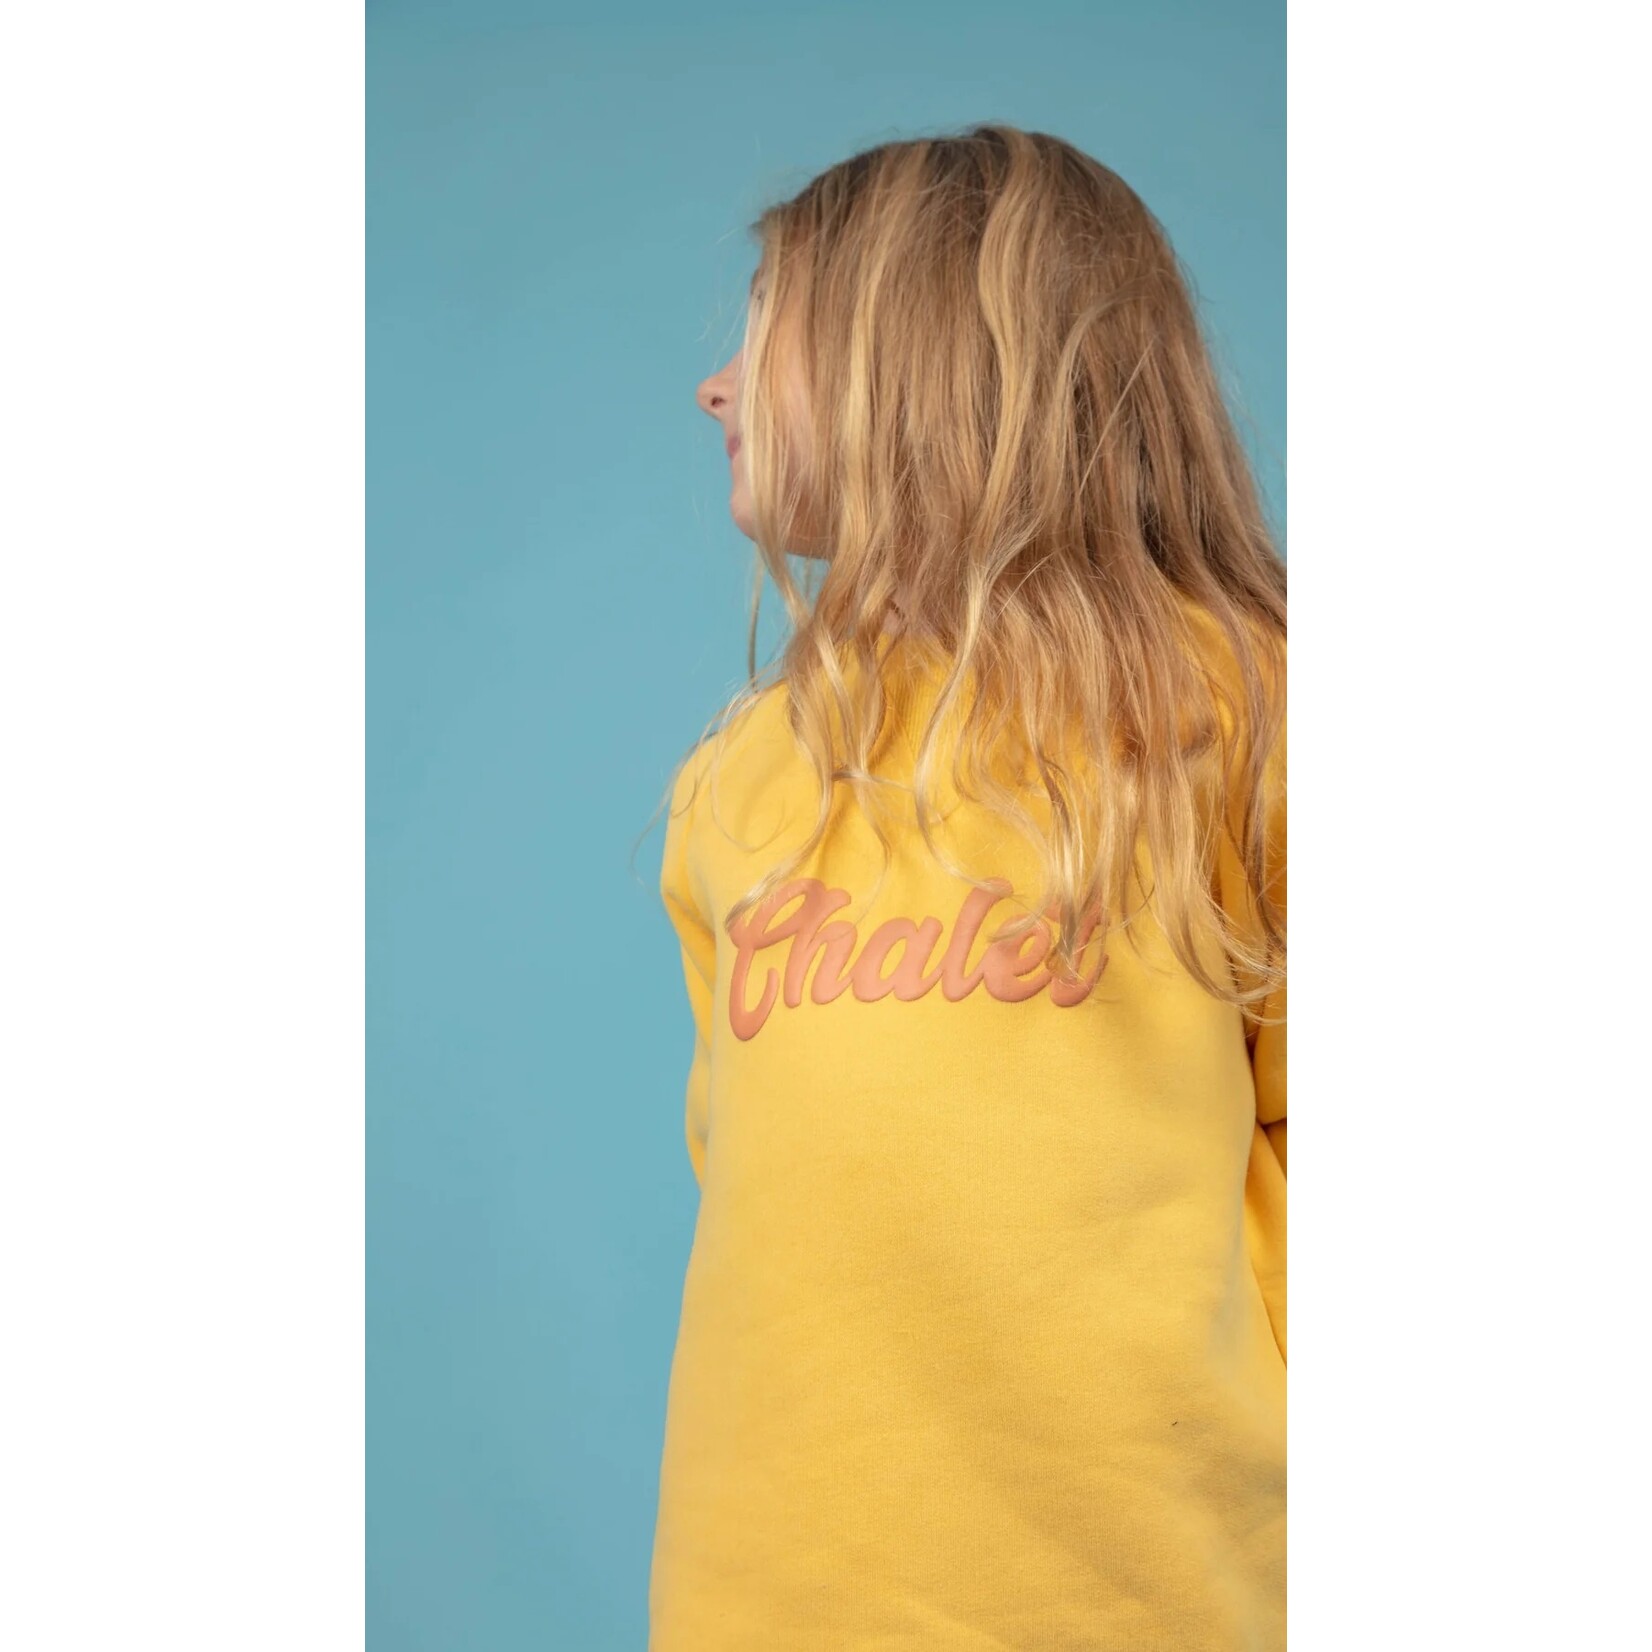 Birdz BIRDZ - Chandail coton ouaté jaune 'Chalet' avec lettrage rose